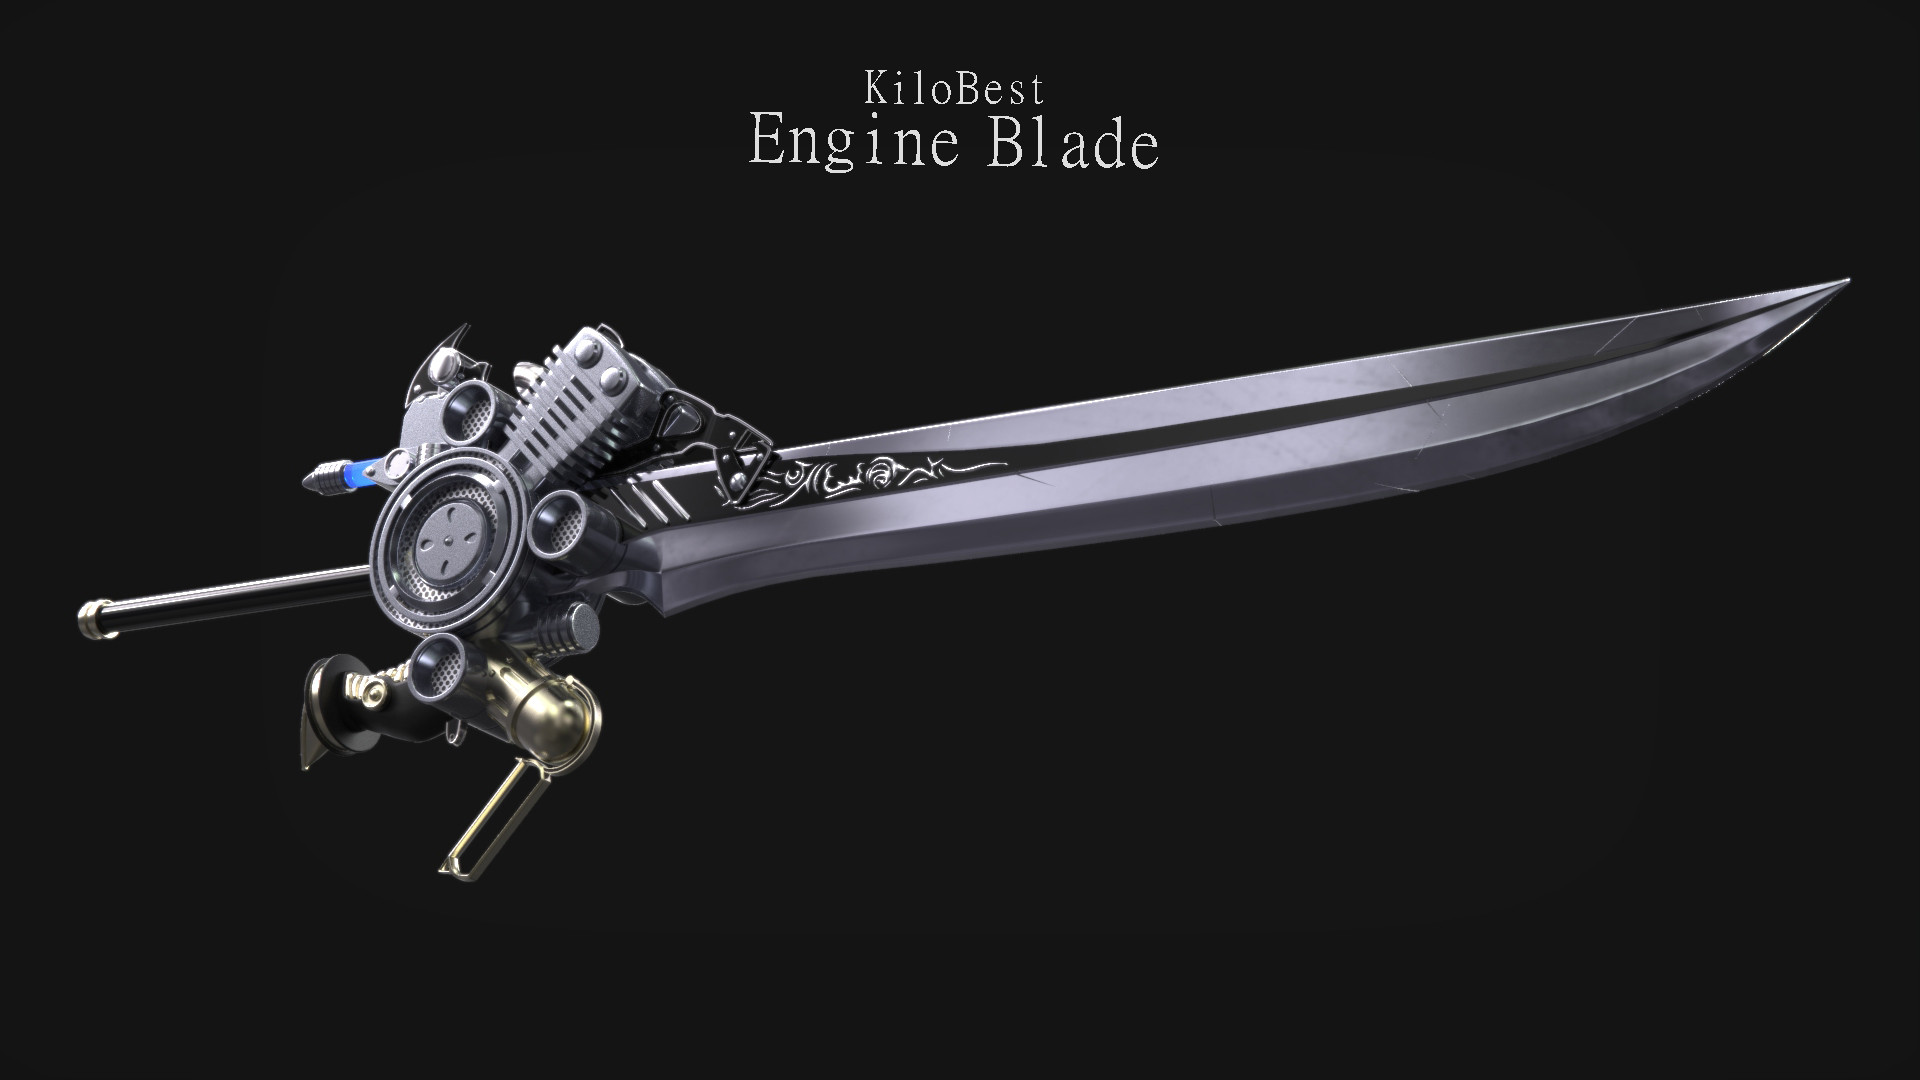 Final blade